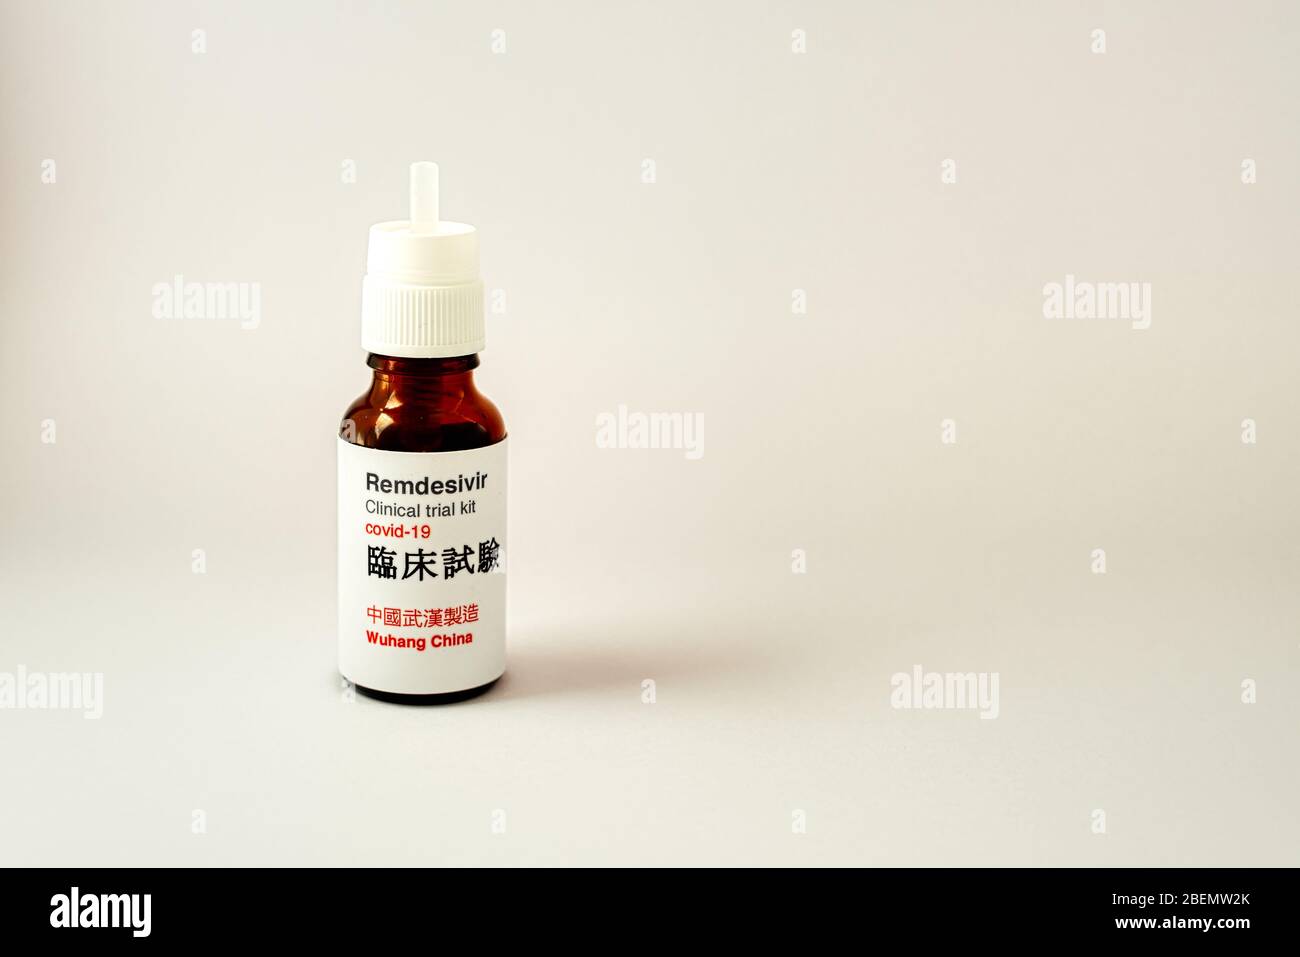 Remdisivir testing kit for an antiviral drug against Corona-19, Denmark, April 16, 2020 Stock Photo